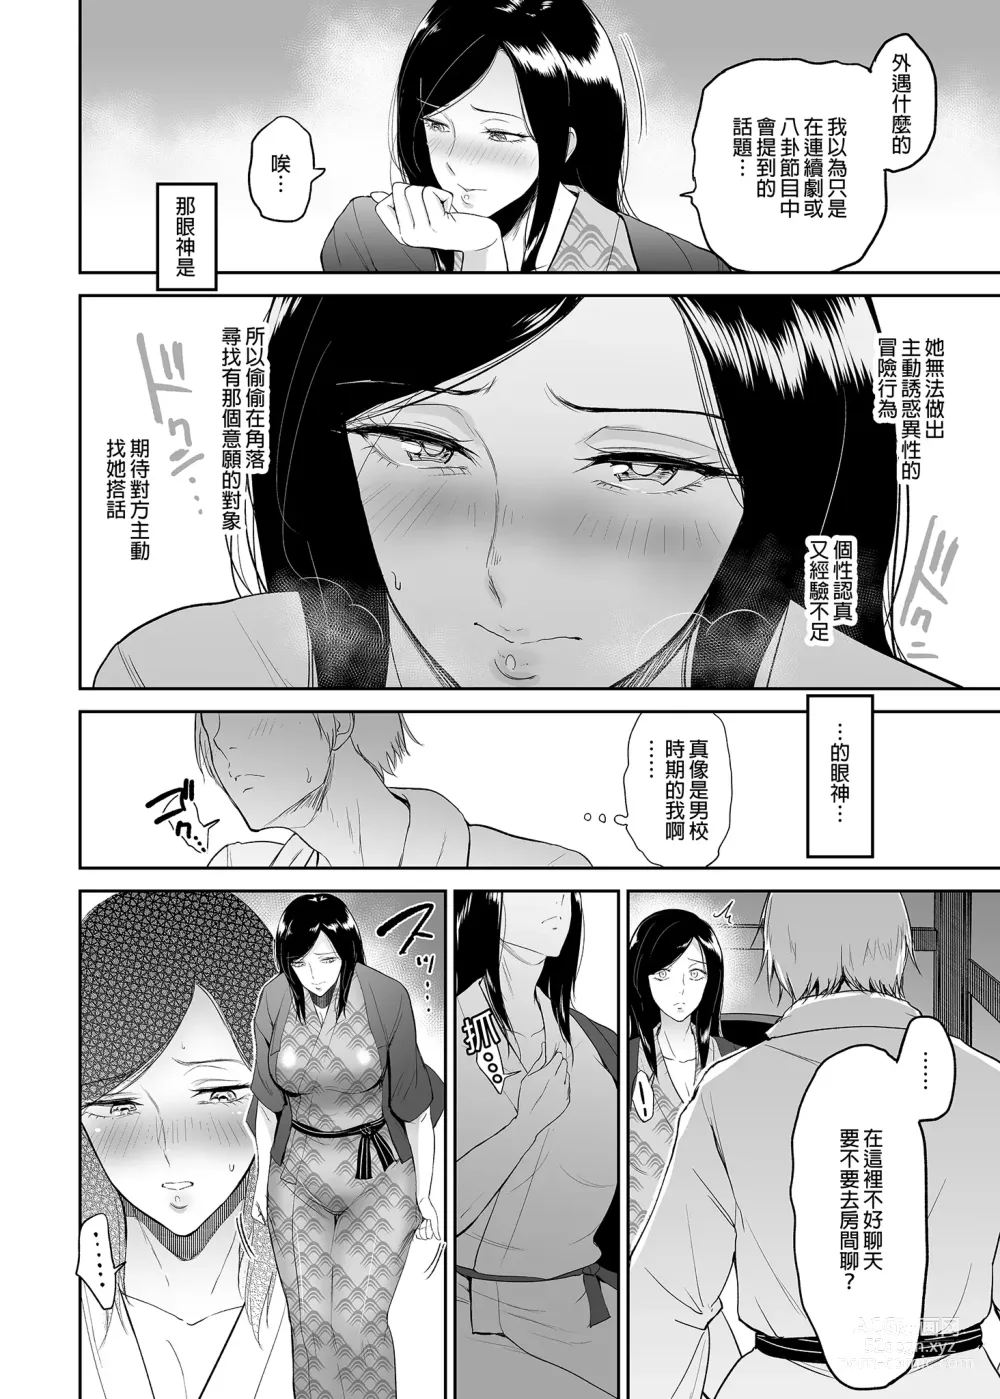 Page 9 of doujinshi マリエさんと温泉+マリエさんとお風呂場+処女を散らす部屋